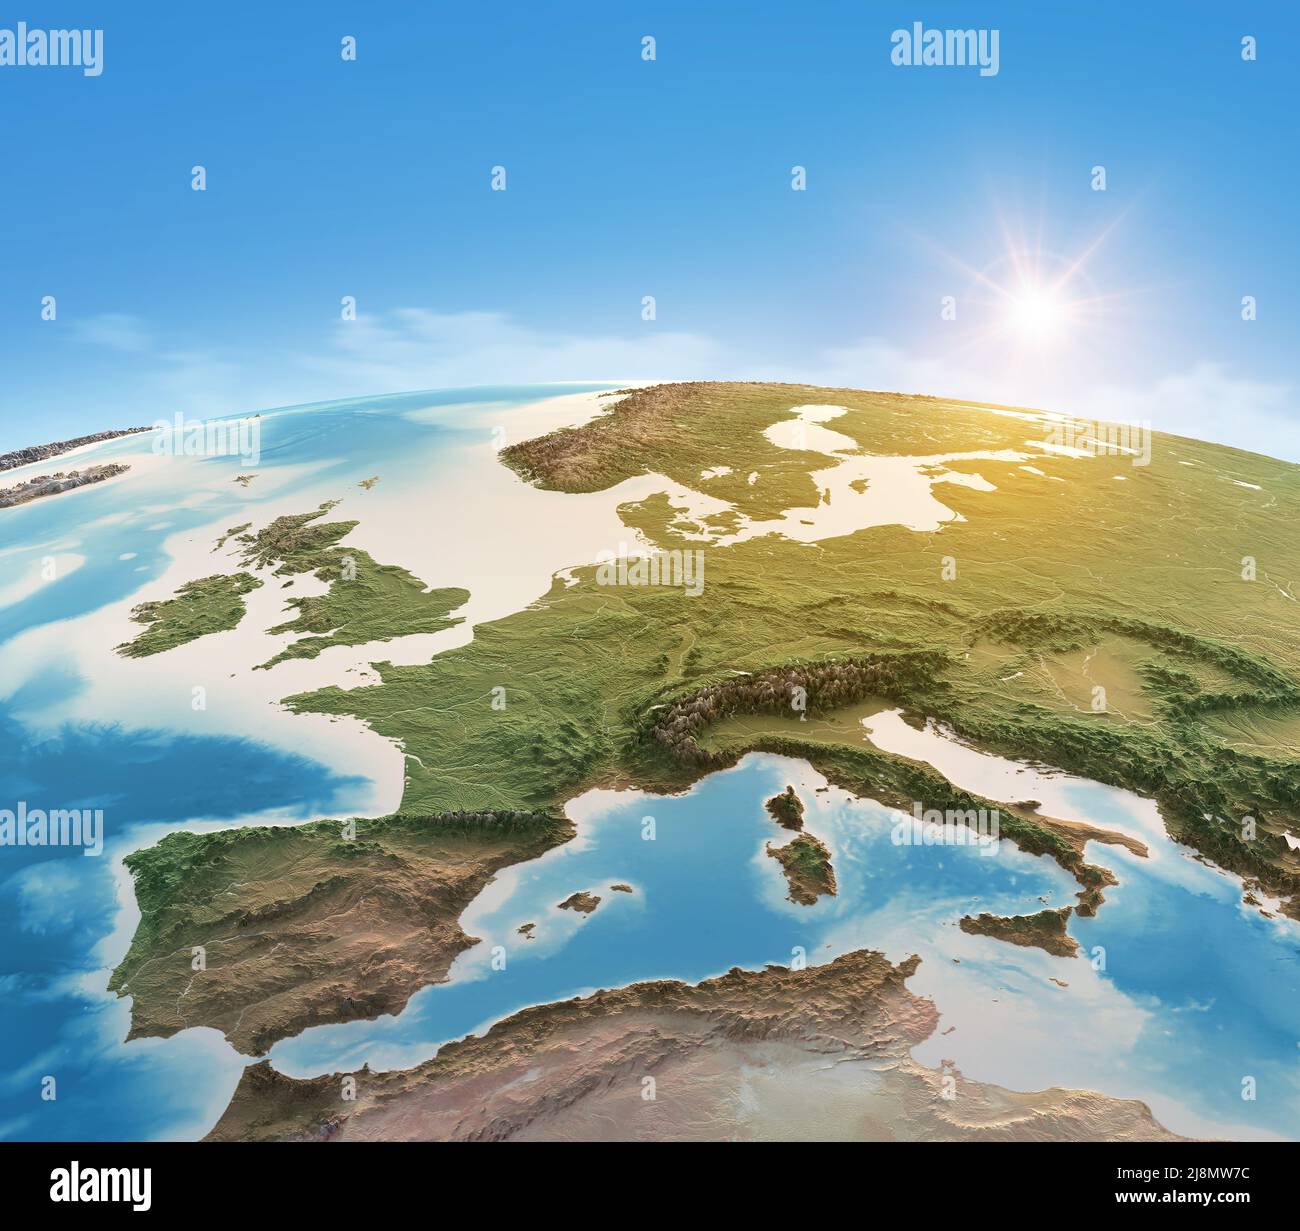 Mappa fisica del pianeta Terra, focalizzata sull'Europa occidentale. Vista satellitare, sole che splende all'orizzonte. Elementi forniti dalla NASA Foto Stock